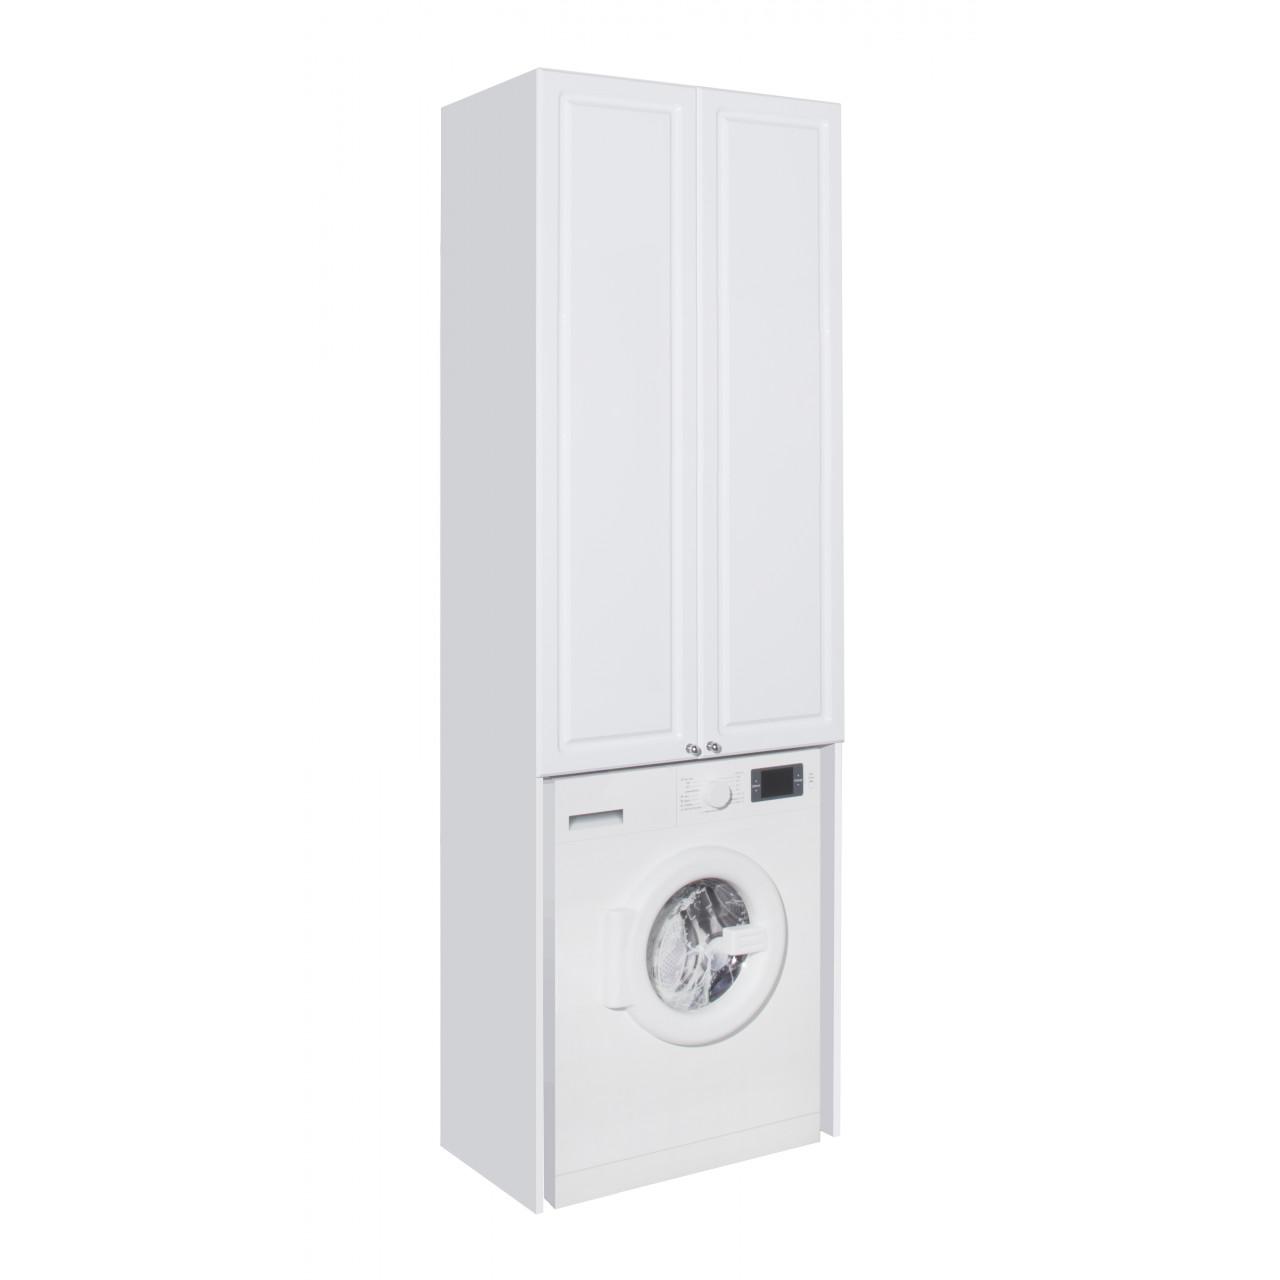 Шкаф Style line эко 68 над стиральной машиной, белый (2000949233802)